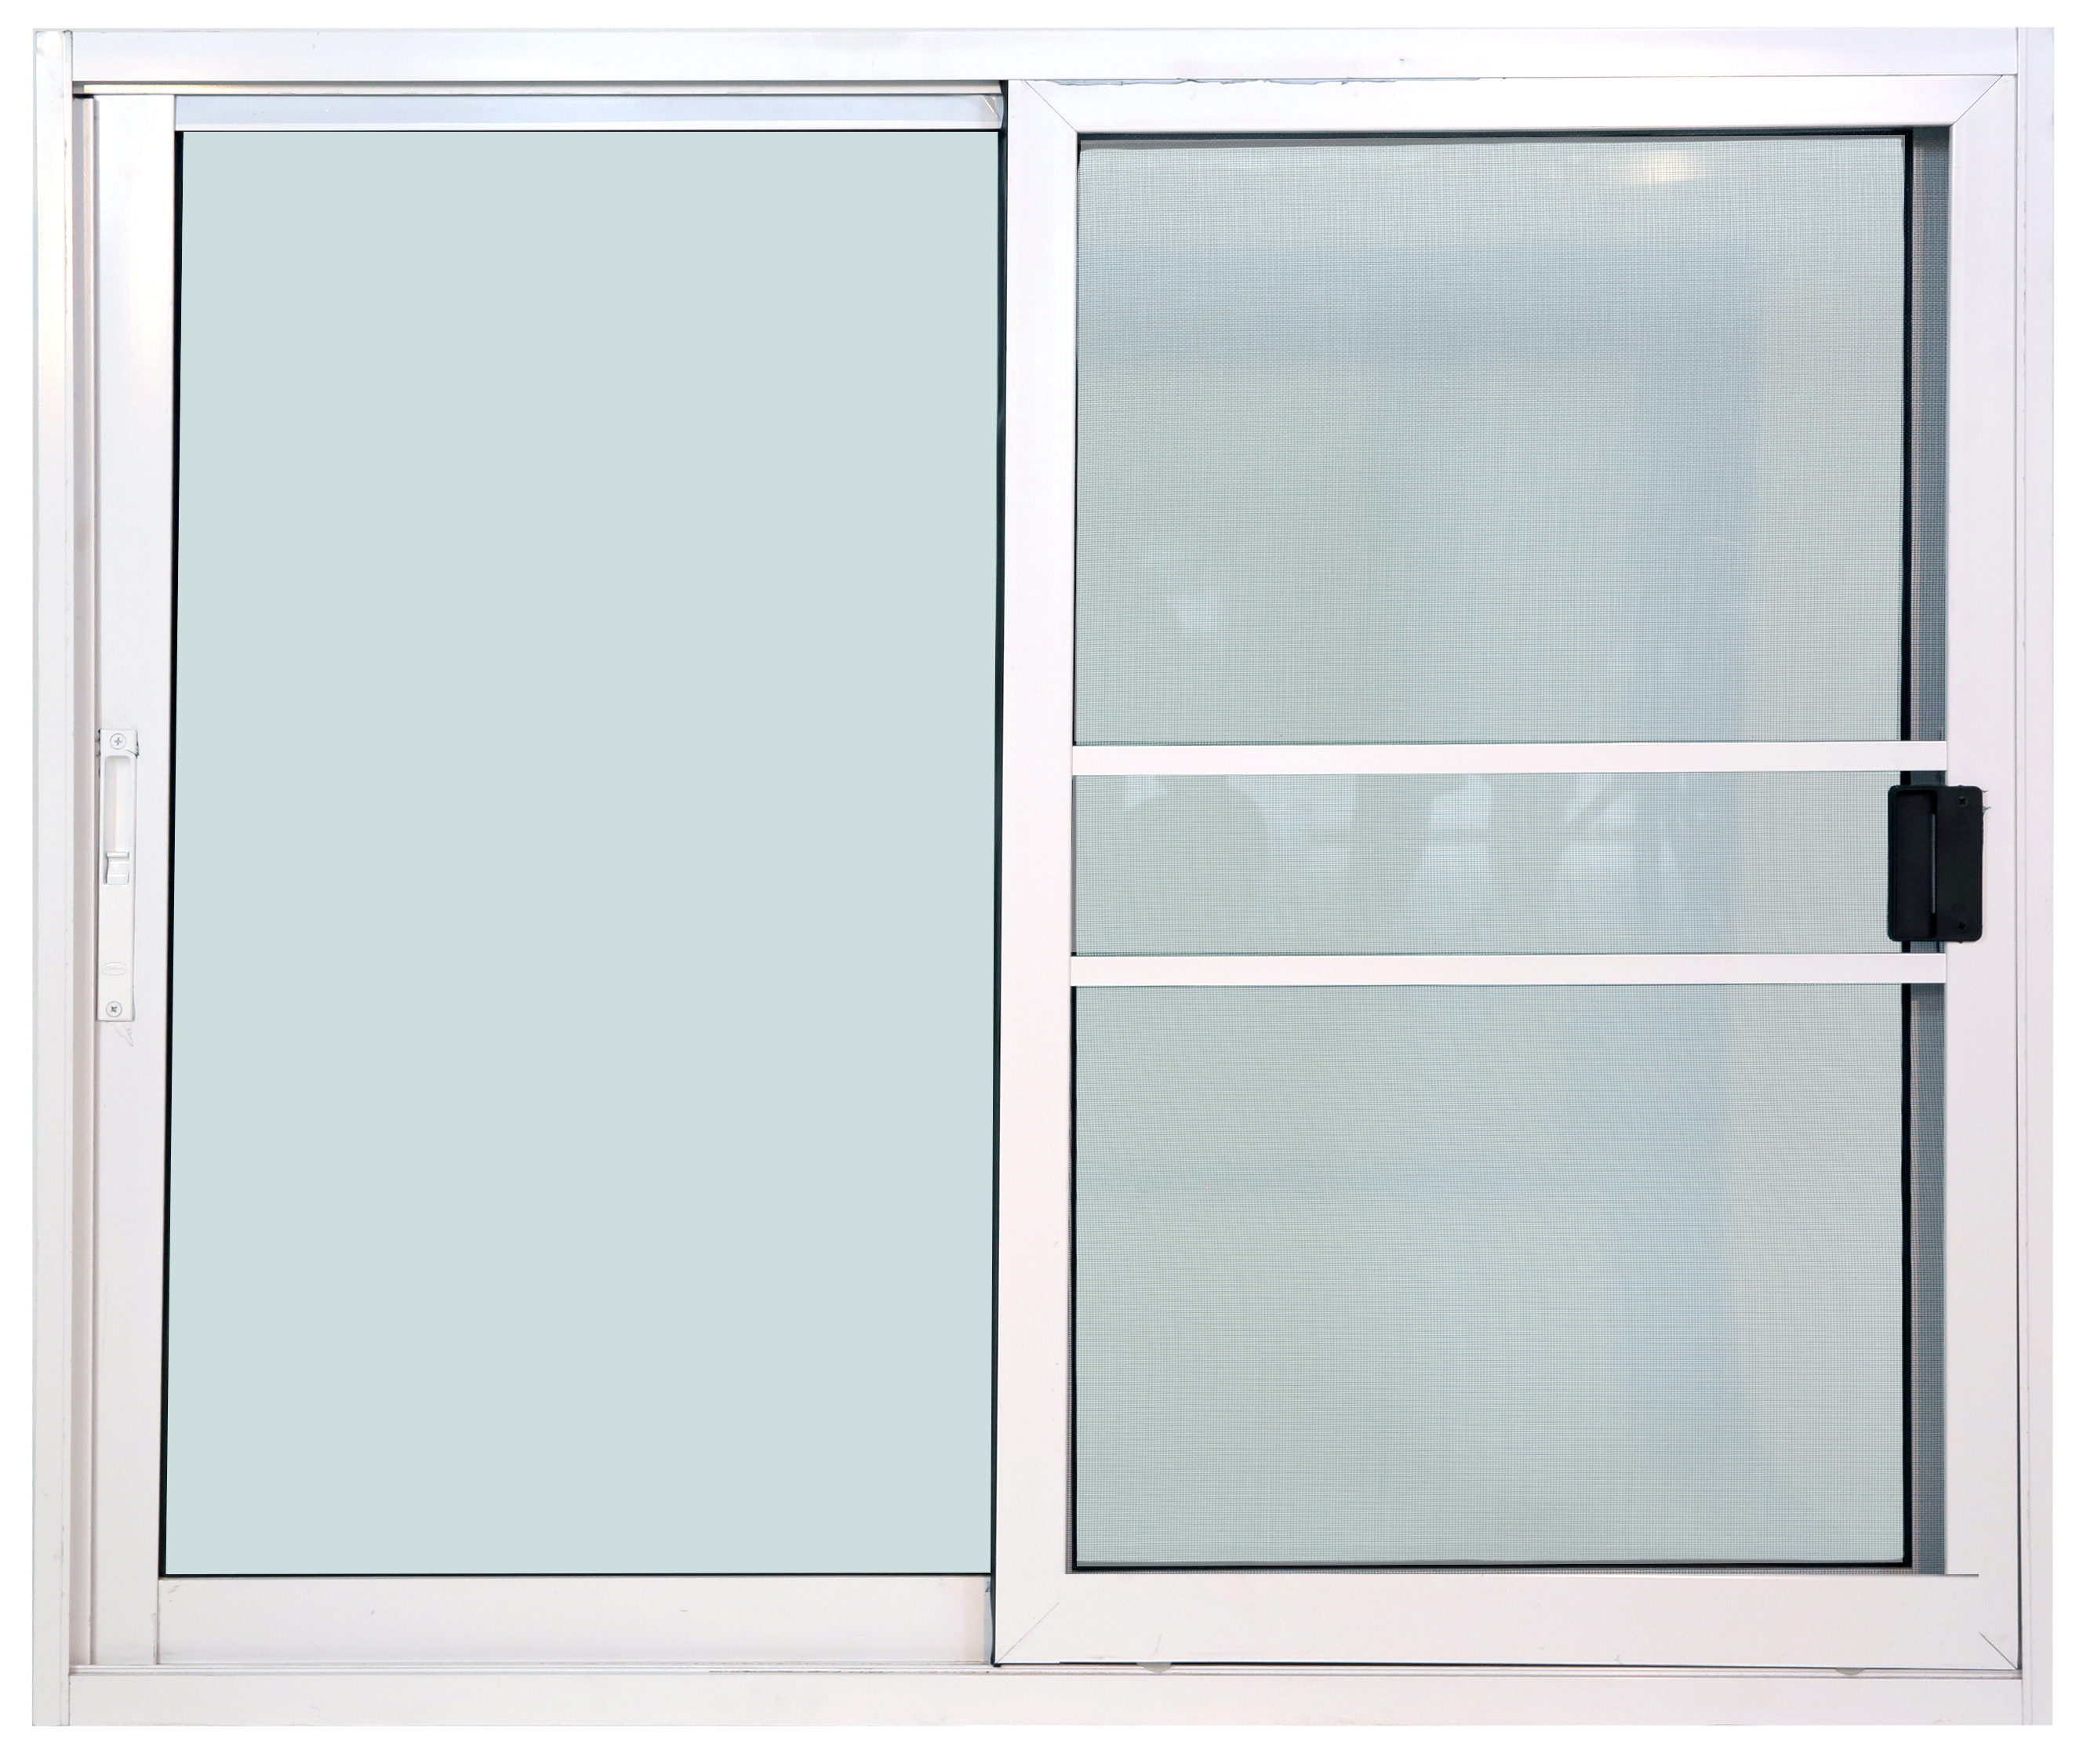 หน้าต่างบานเลื่อน 2ช่อง อลูมิเนียมสีอบขาว+กระจกใสเขียว+มุ้ง 120ซม.*110ซม.(ล็อคกลาง)